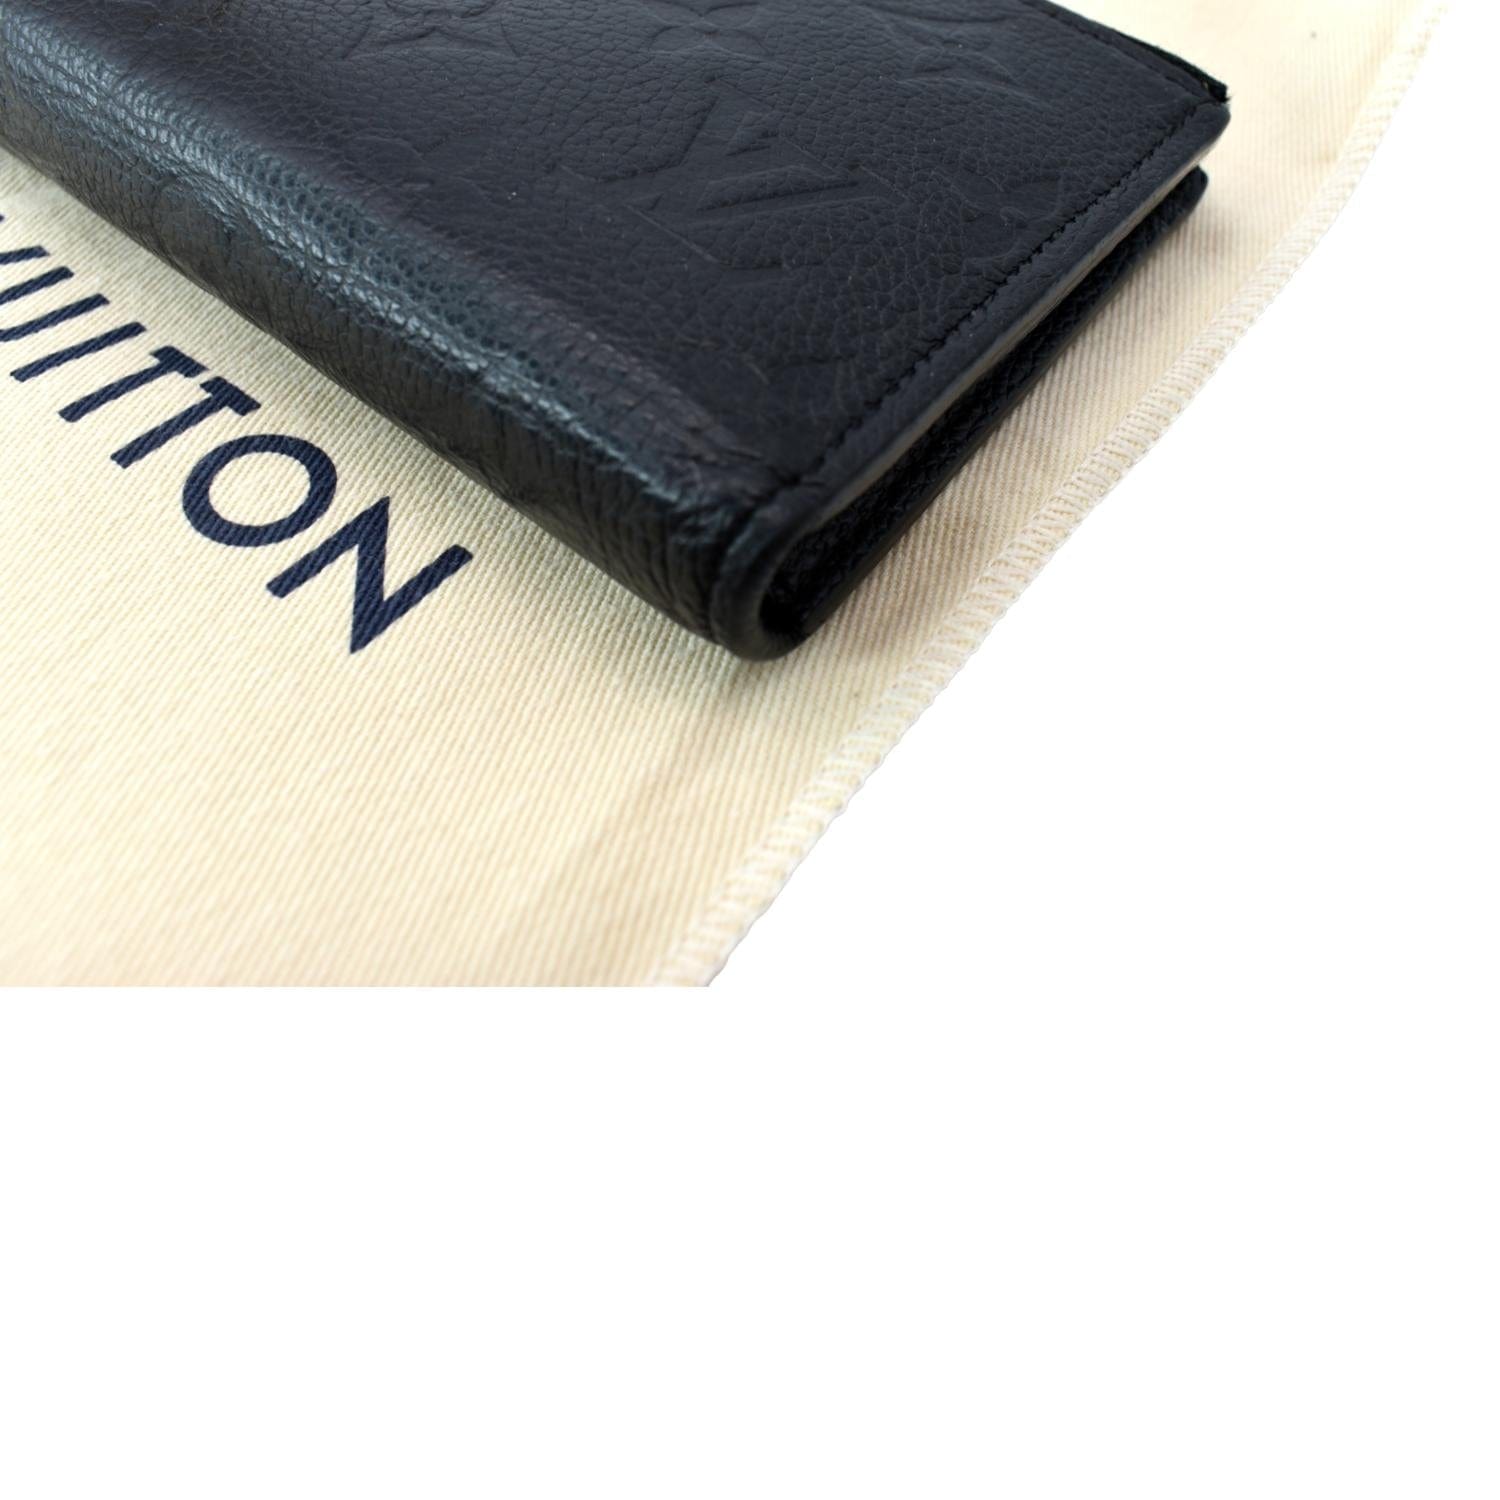 NEW Louis Vuitton Wallet Adele Monogram Canvas AUTHENTIC